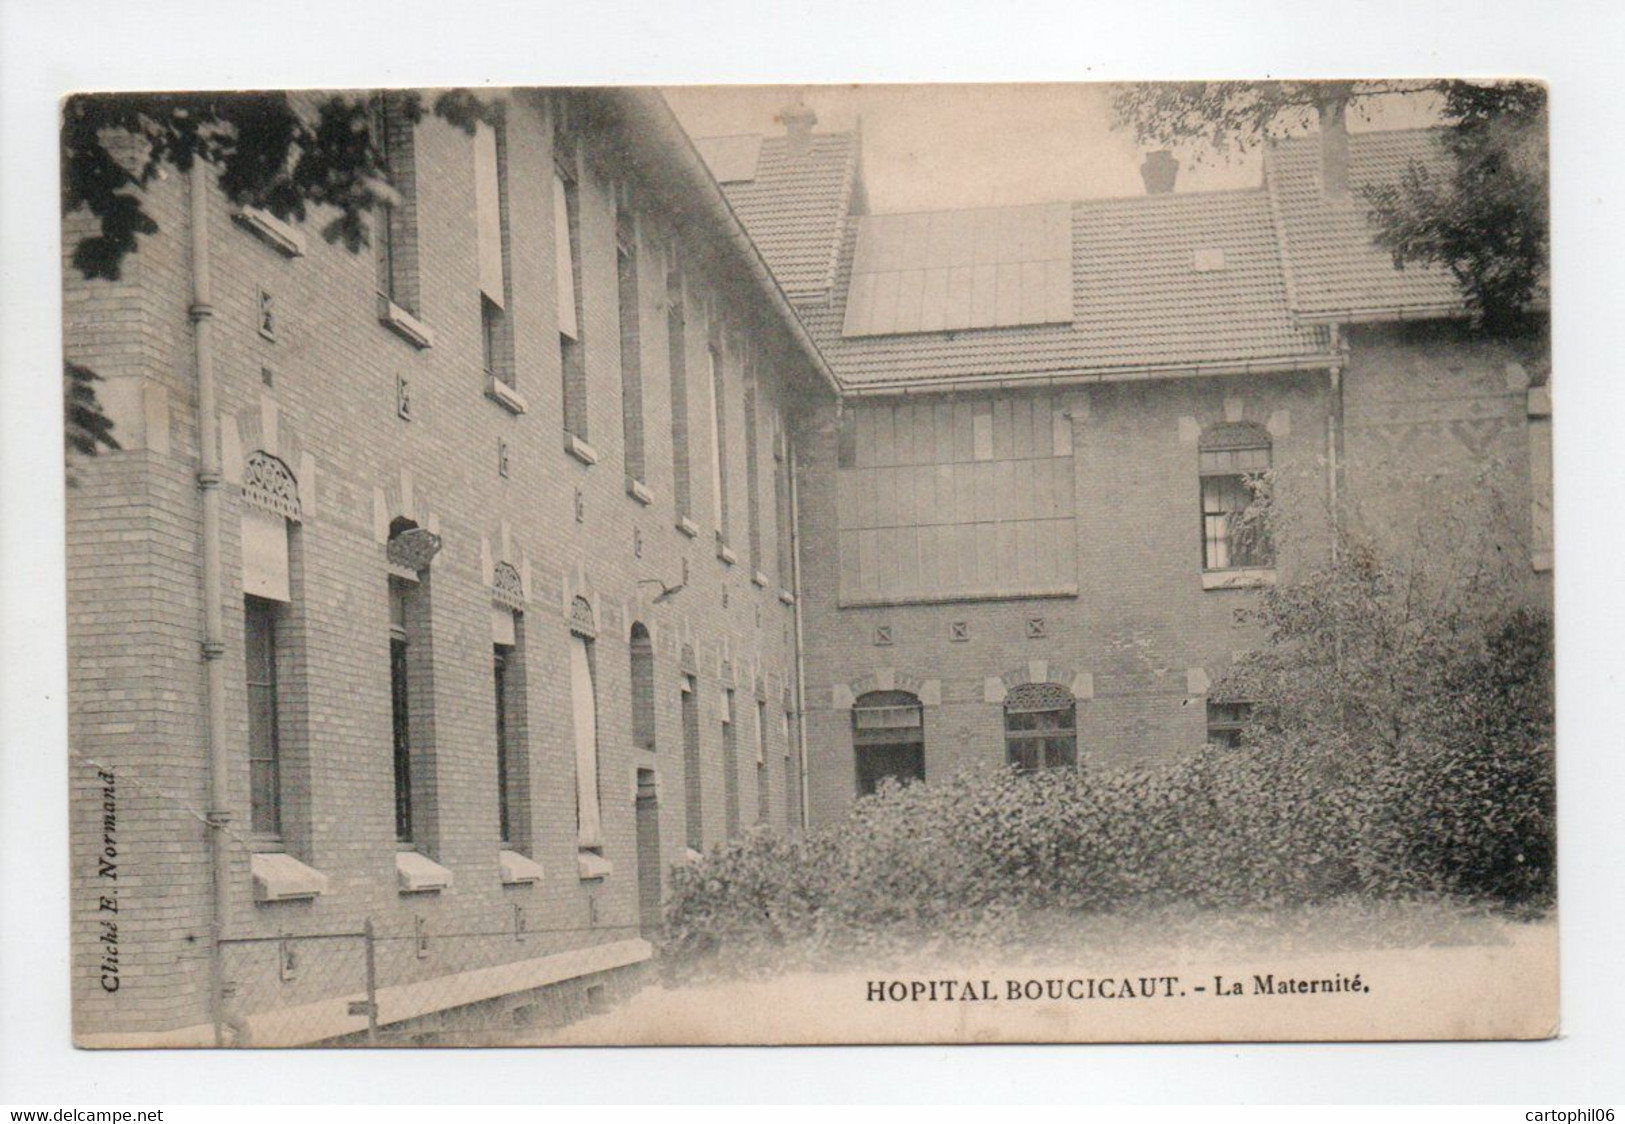 - CPA PARIS (75) - HOPITAL BOUCICAUT - La Maternité - Cliché E. Normand - - Santé, Hôpitaux